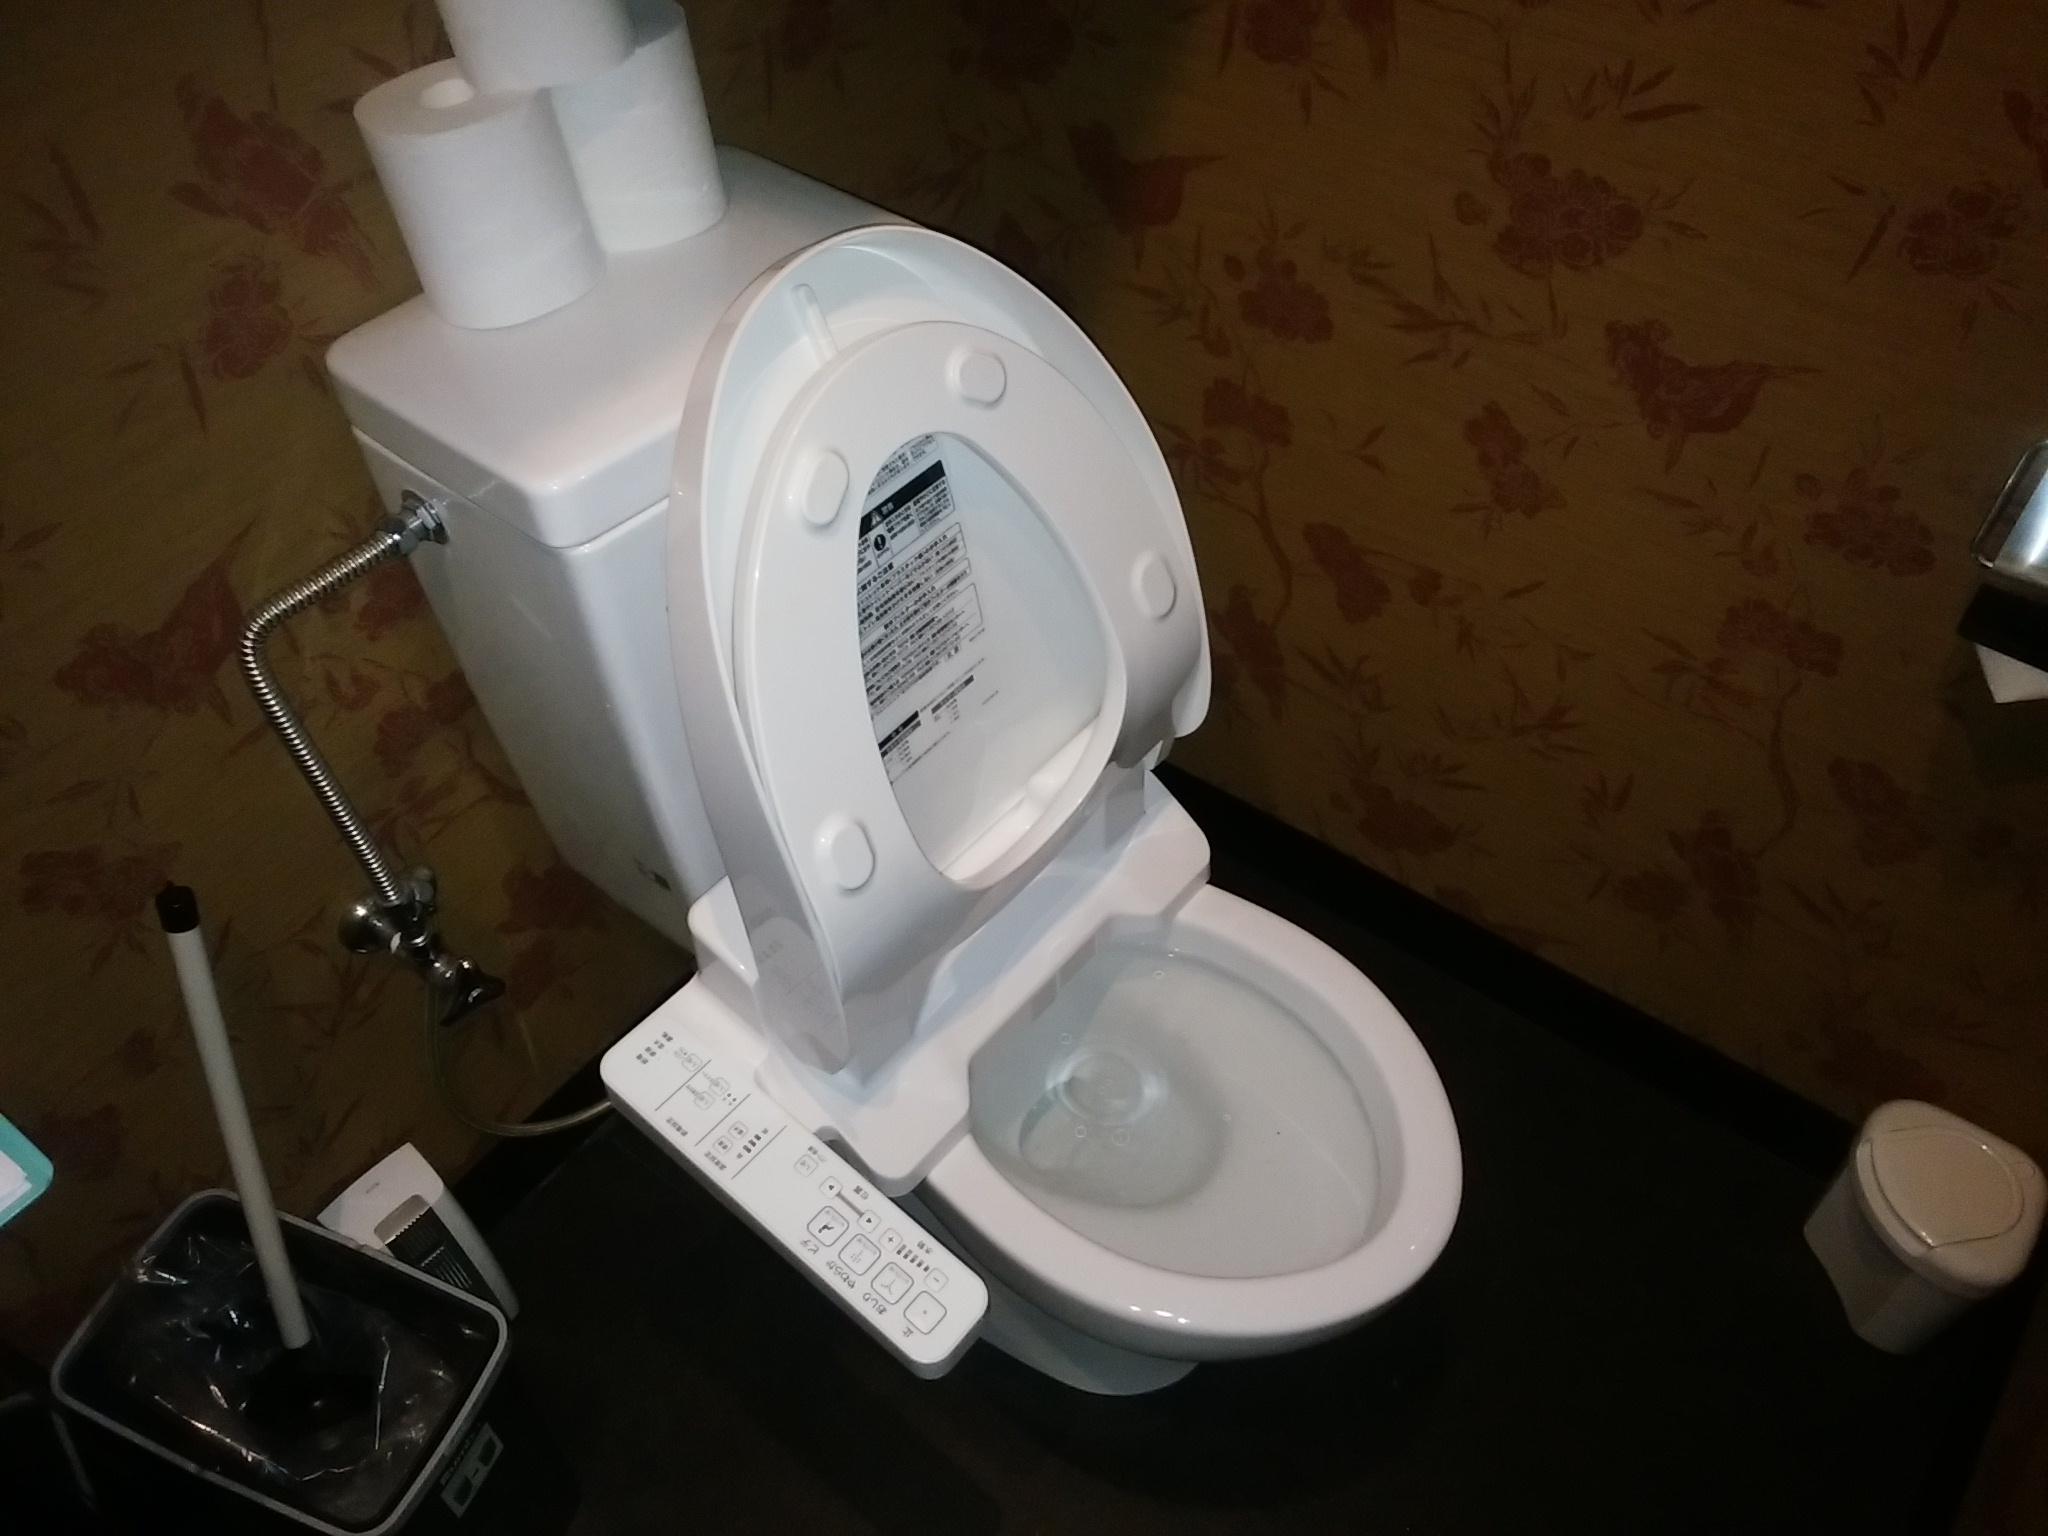 札幌市 中央区 すすきの トイレ詰まり 修理 │お見積だけでもお伺いします！ 札幌で水漏れ・つまりの修理なら